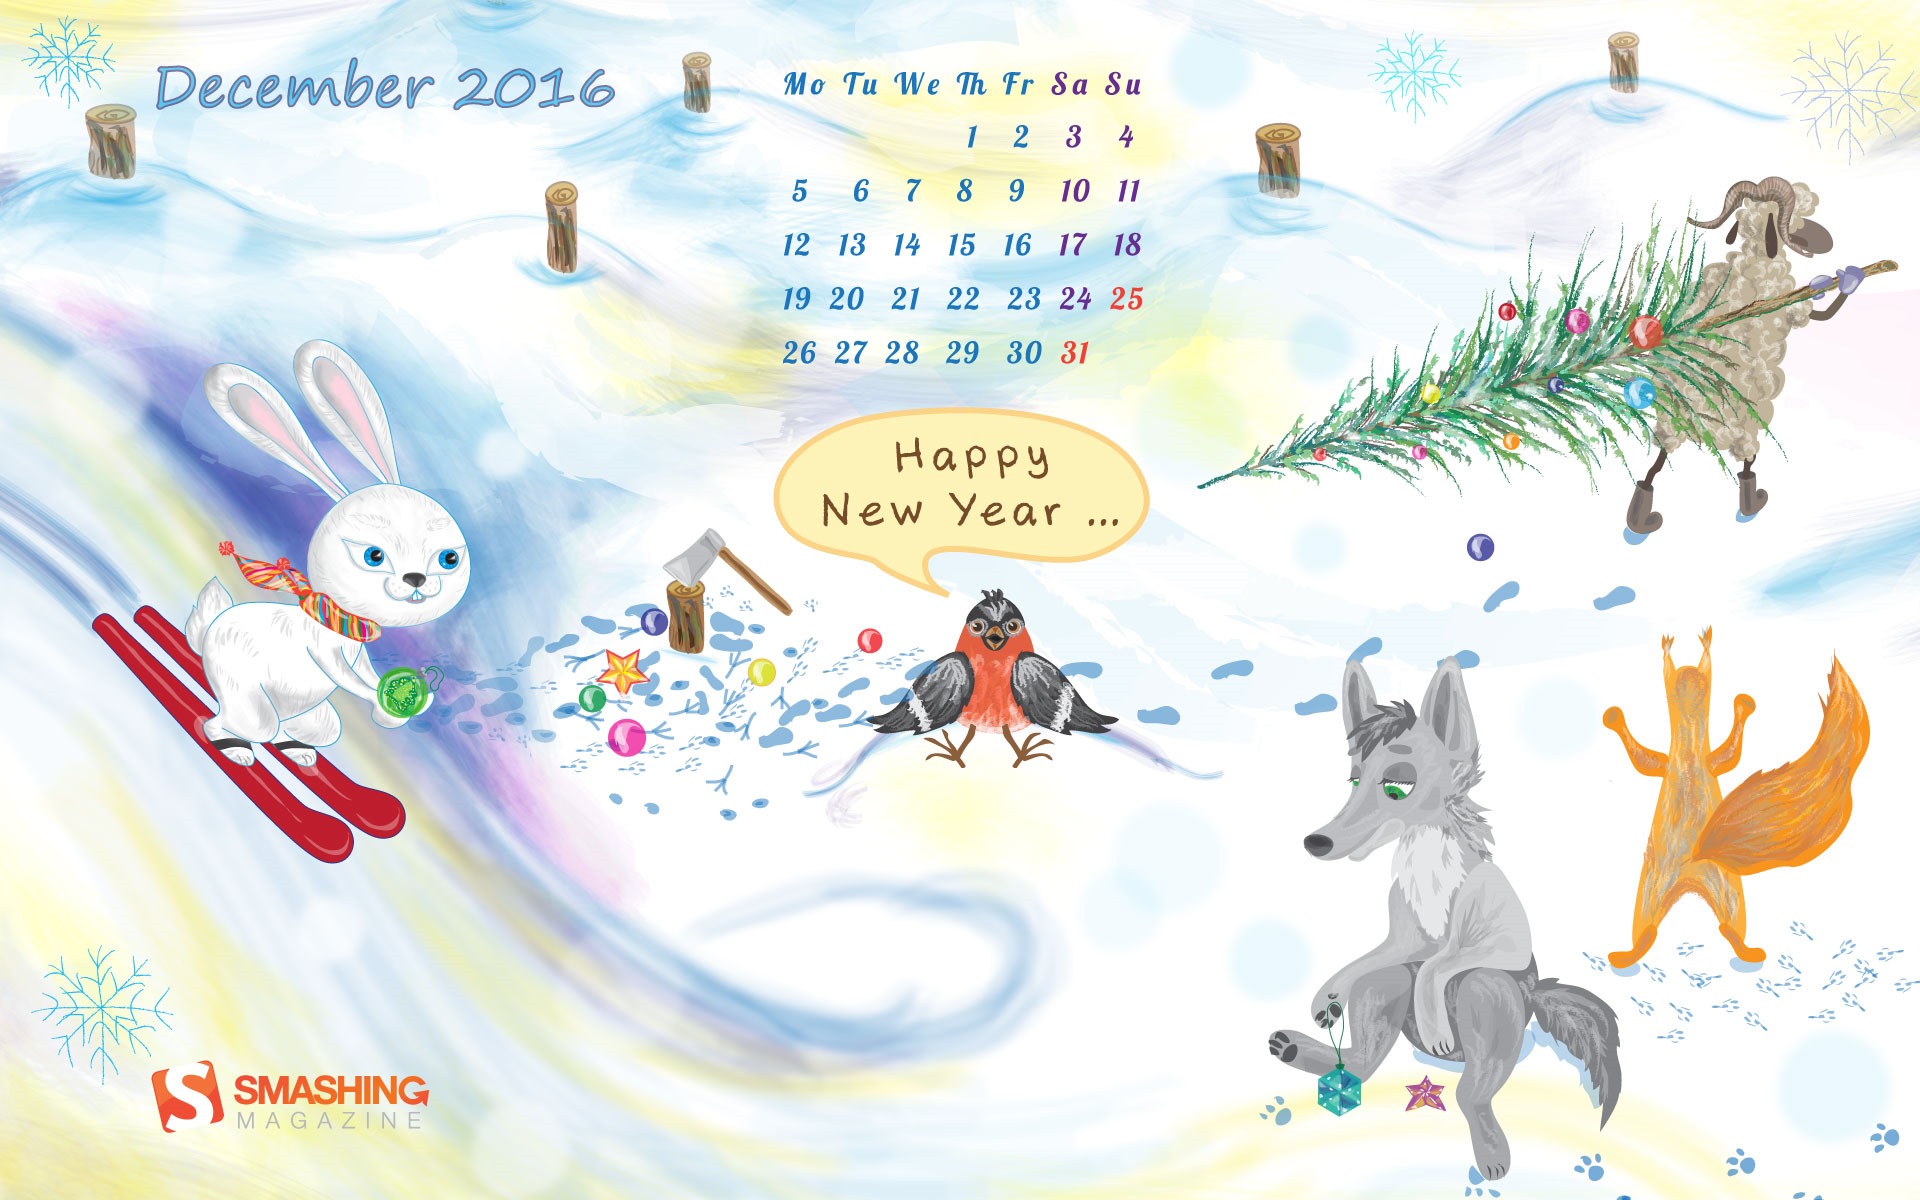 December 2016 Christmas theme calendar wallpaper (1) #27 - 1920x1200